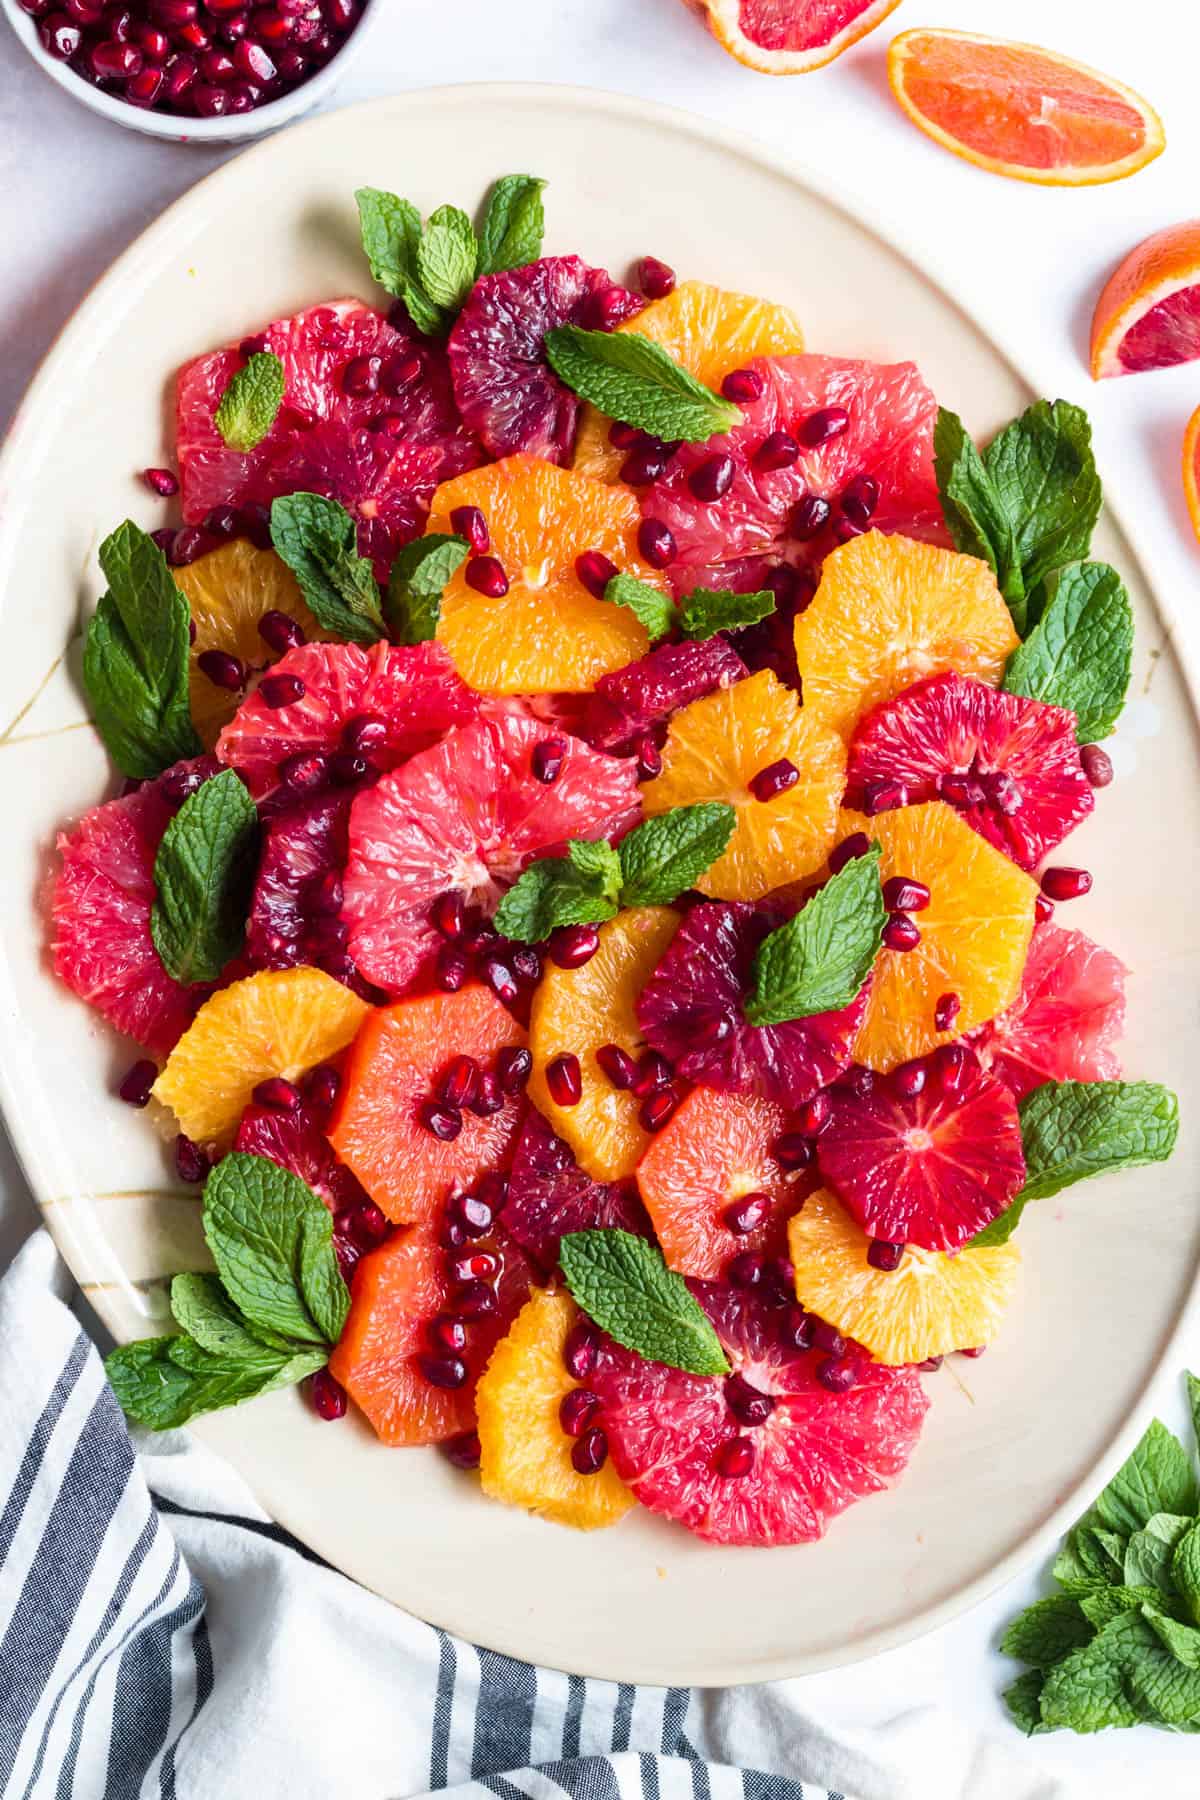 Healthy fruit salad recipes